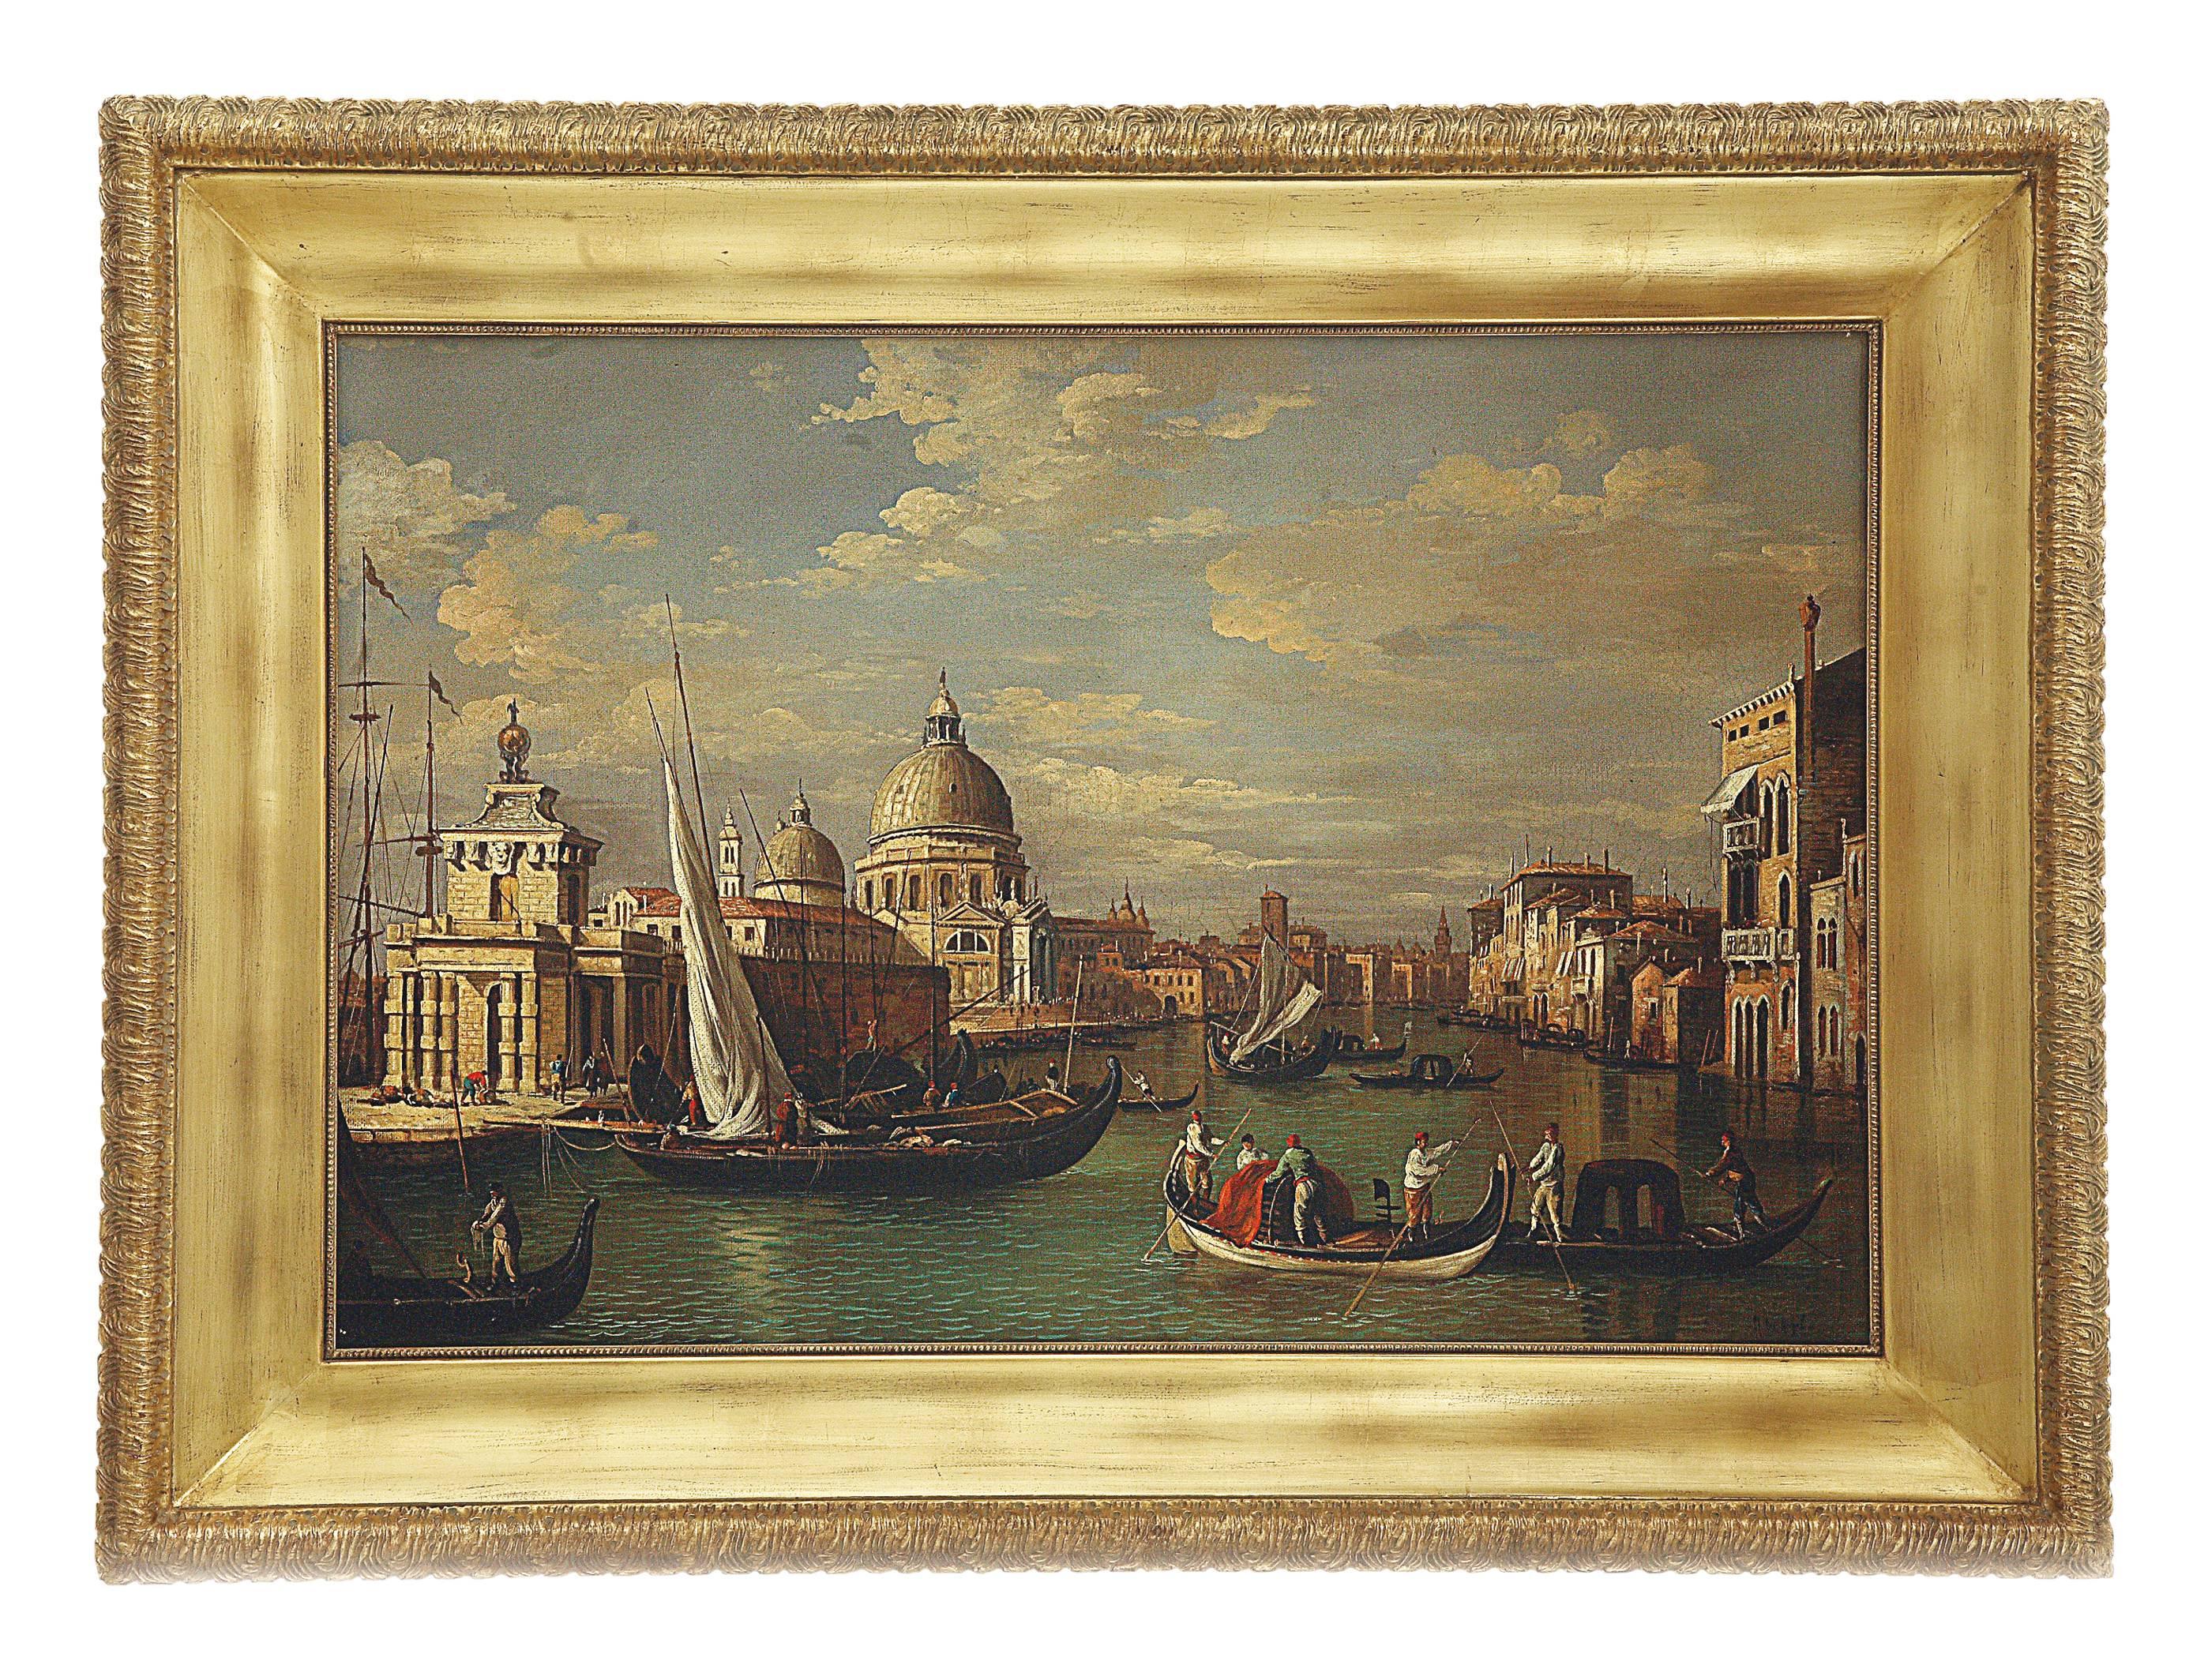 VENICE – in der Art von Canaletto – Italienische Landschaft, Öl auf Leinwand, Gemälde 